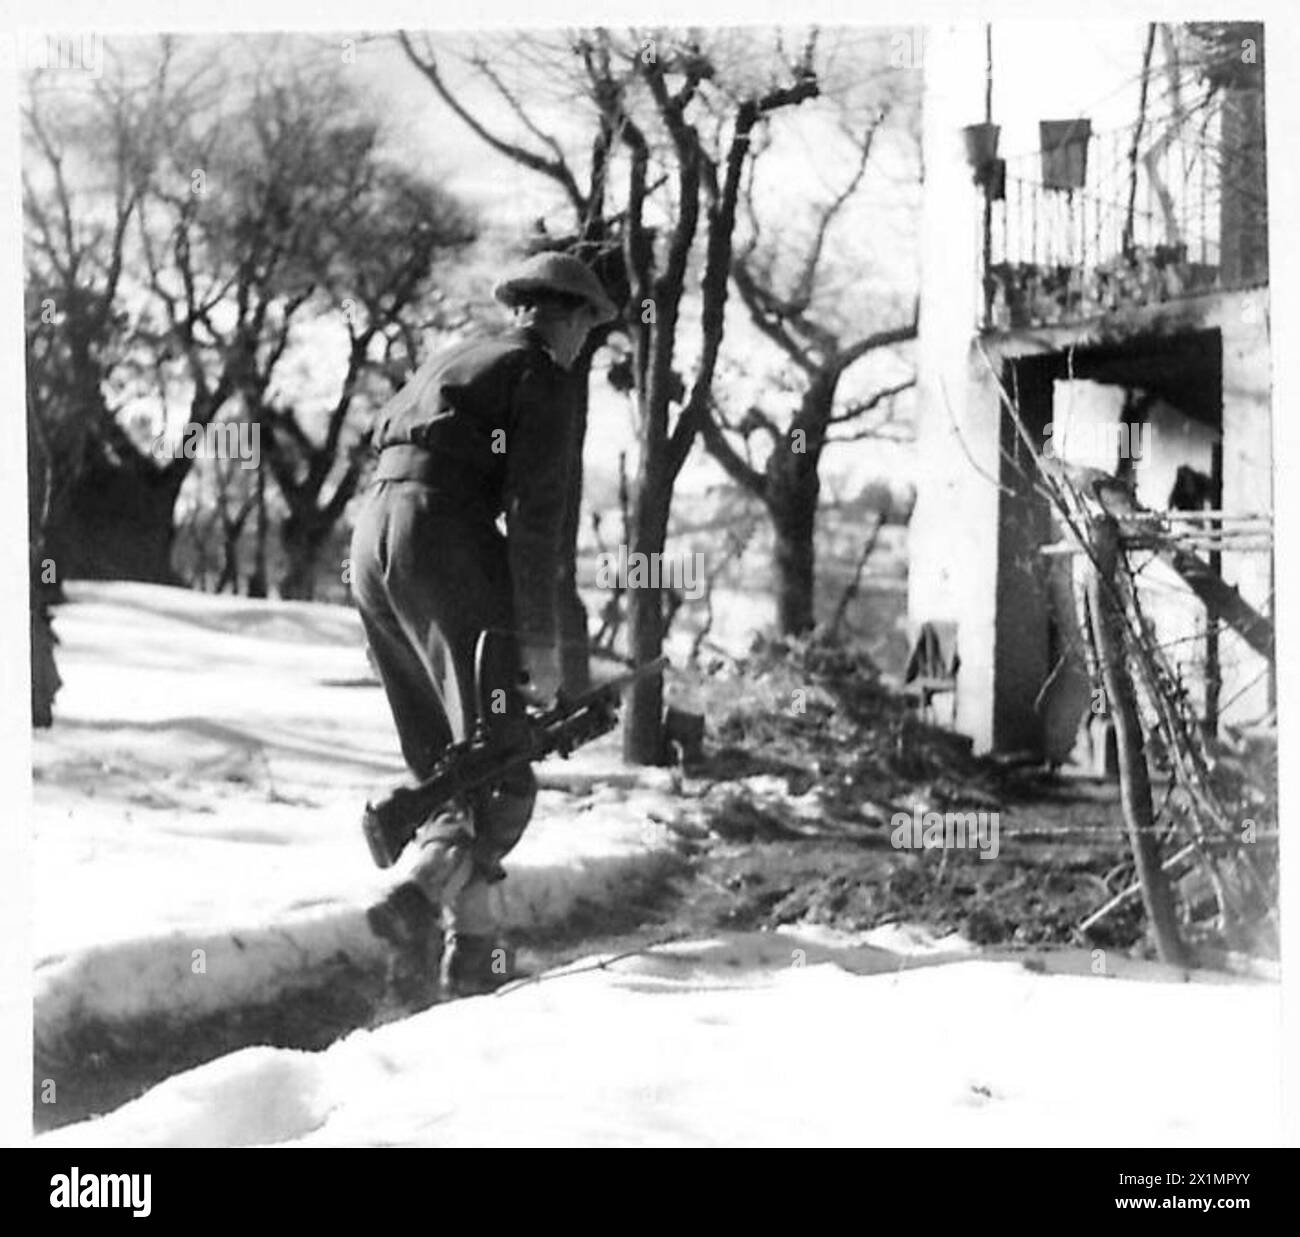 ITALIEN: ACHTE ARMEE - Pte. C.W. Pollardof 5 Percy Avenue, Stratford, Taranoki, Neuseeland, auf einem schneebedeckten Weg zum Haus, besetzt von No. 3 Coy., 22 Motor Bn, britische Armee Stockfoto